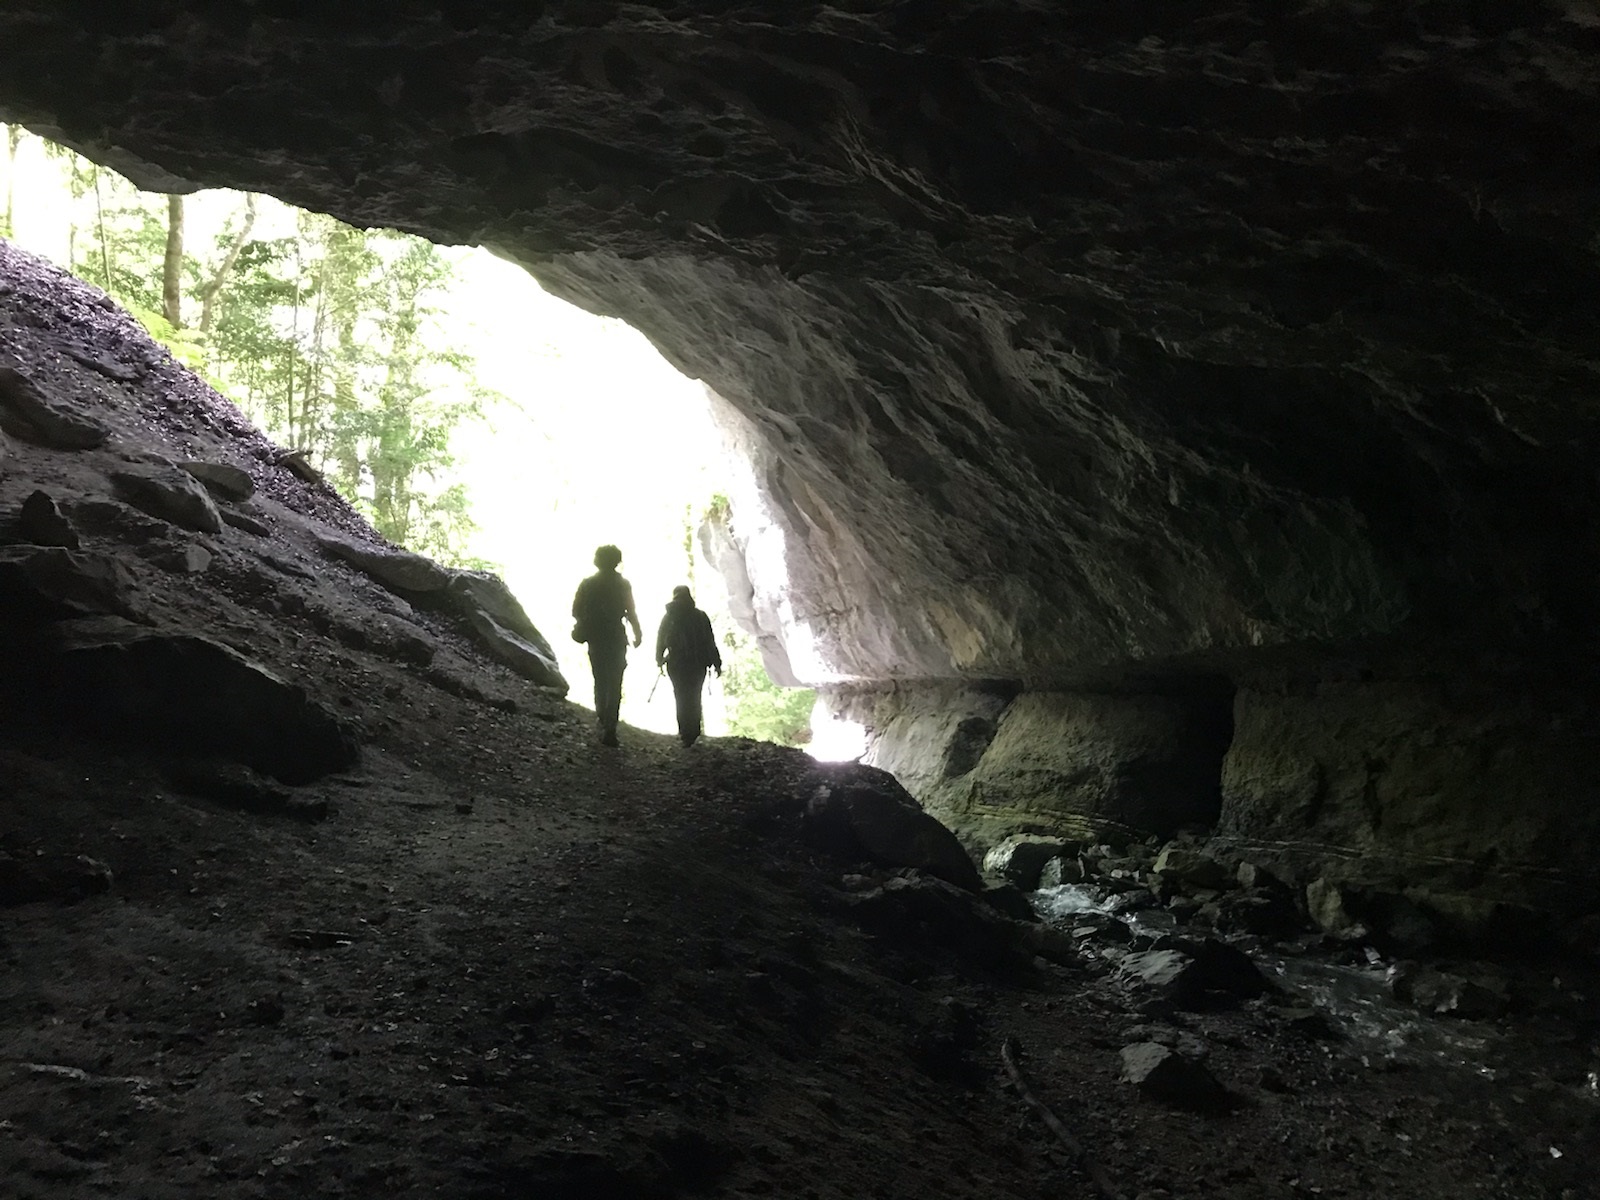 Photo de Faustin et Charline en train de sortir de la grotte, au milieu de son entrée qui est en forme d'amande allongée